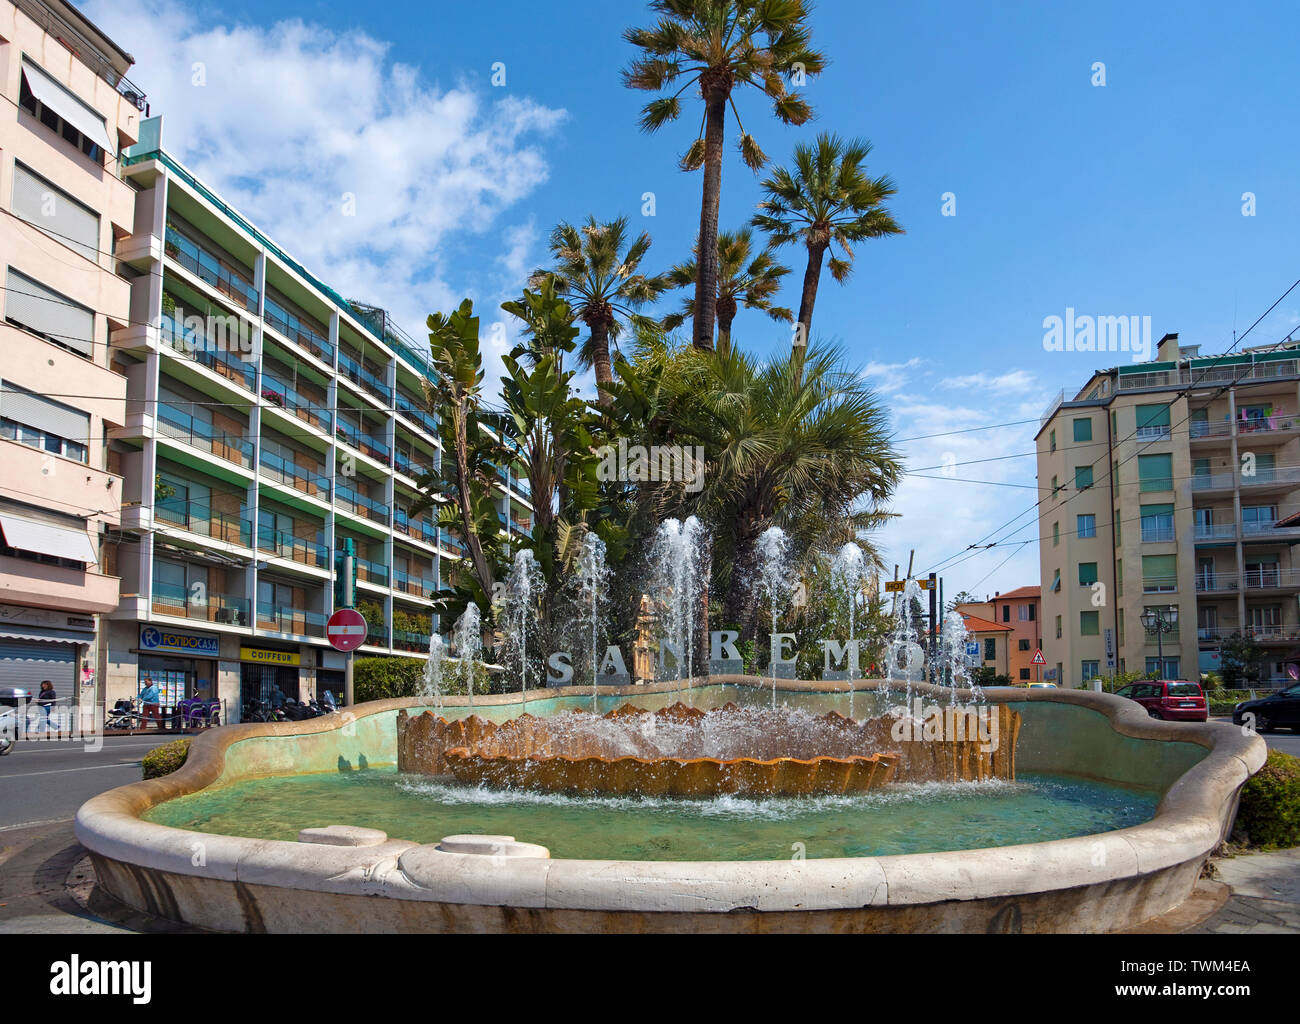 Fontaine avec des lettres dans la rue San Remo, San Remo, ville portuaire sur la côte ligurienne, ligurie, italie Banque D'Images